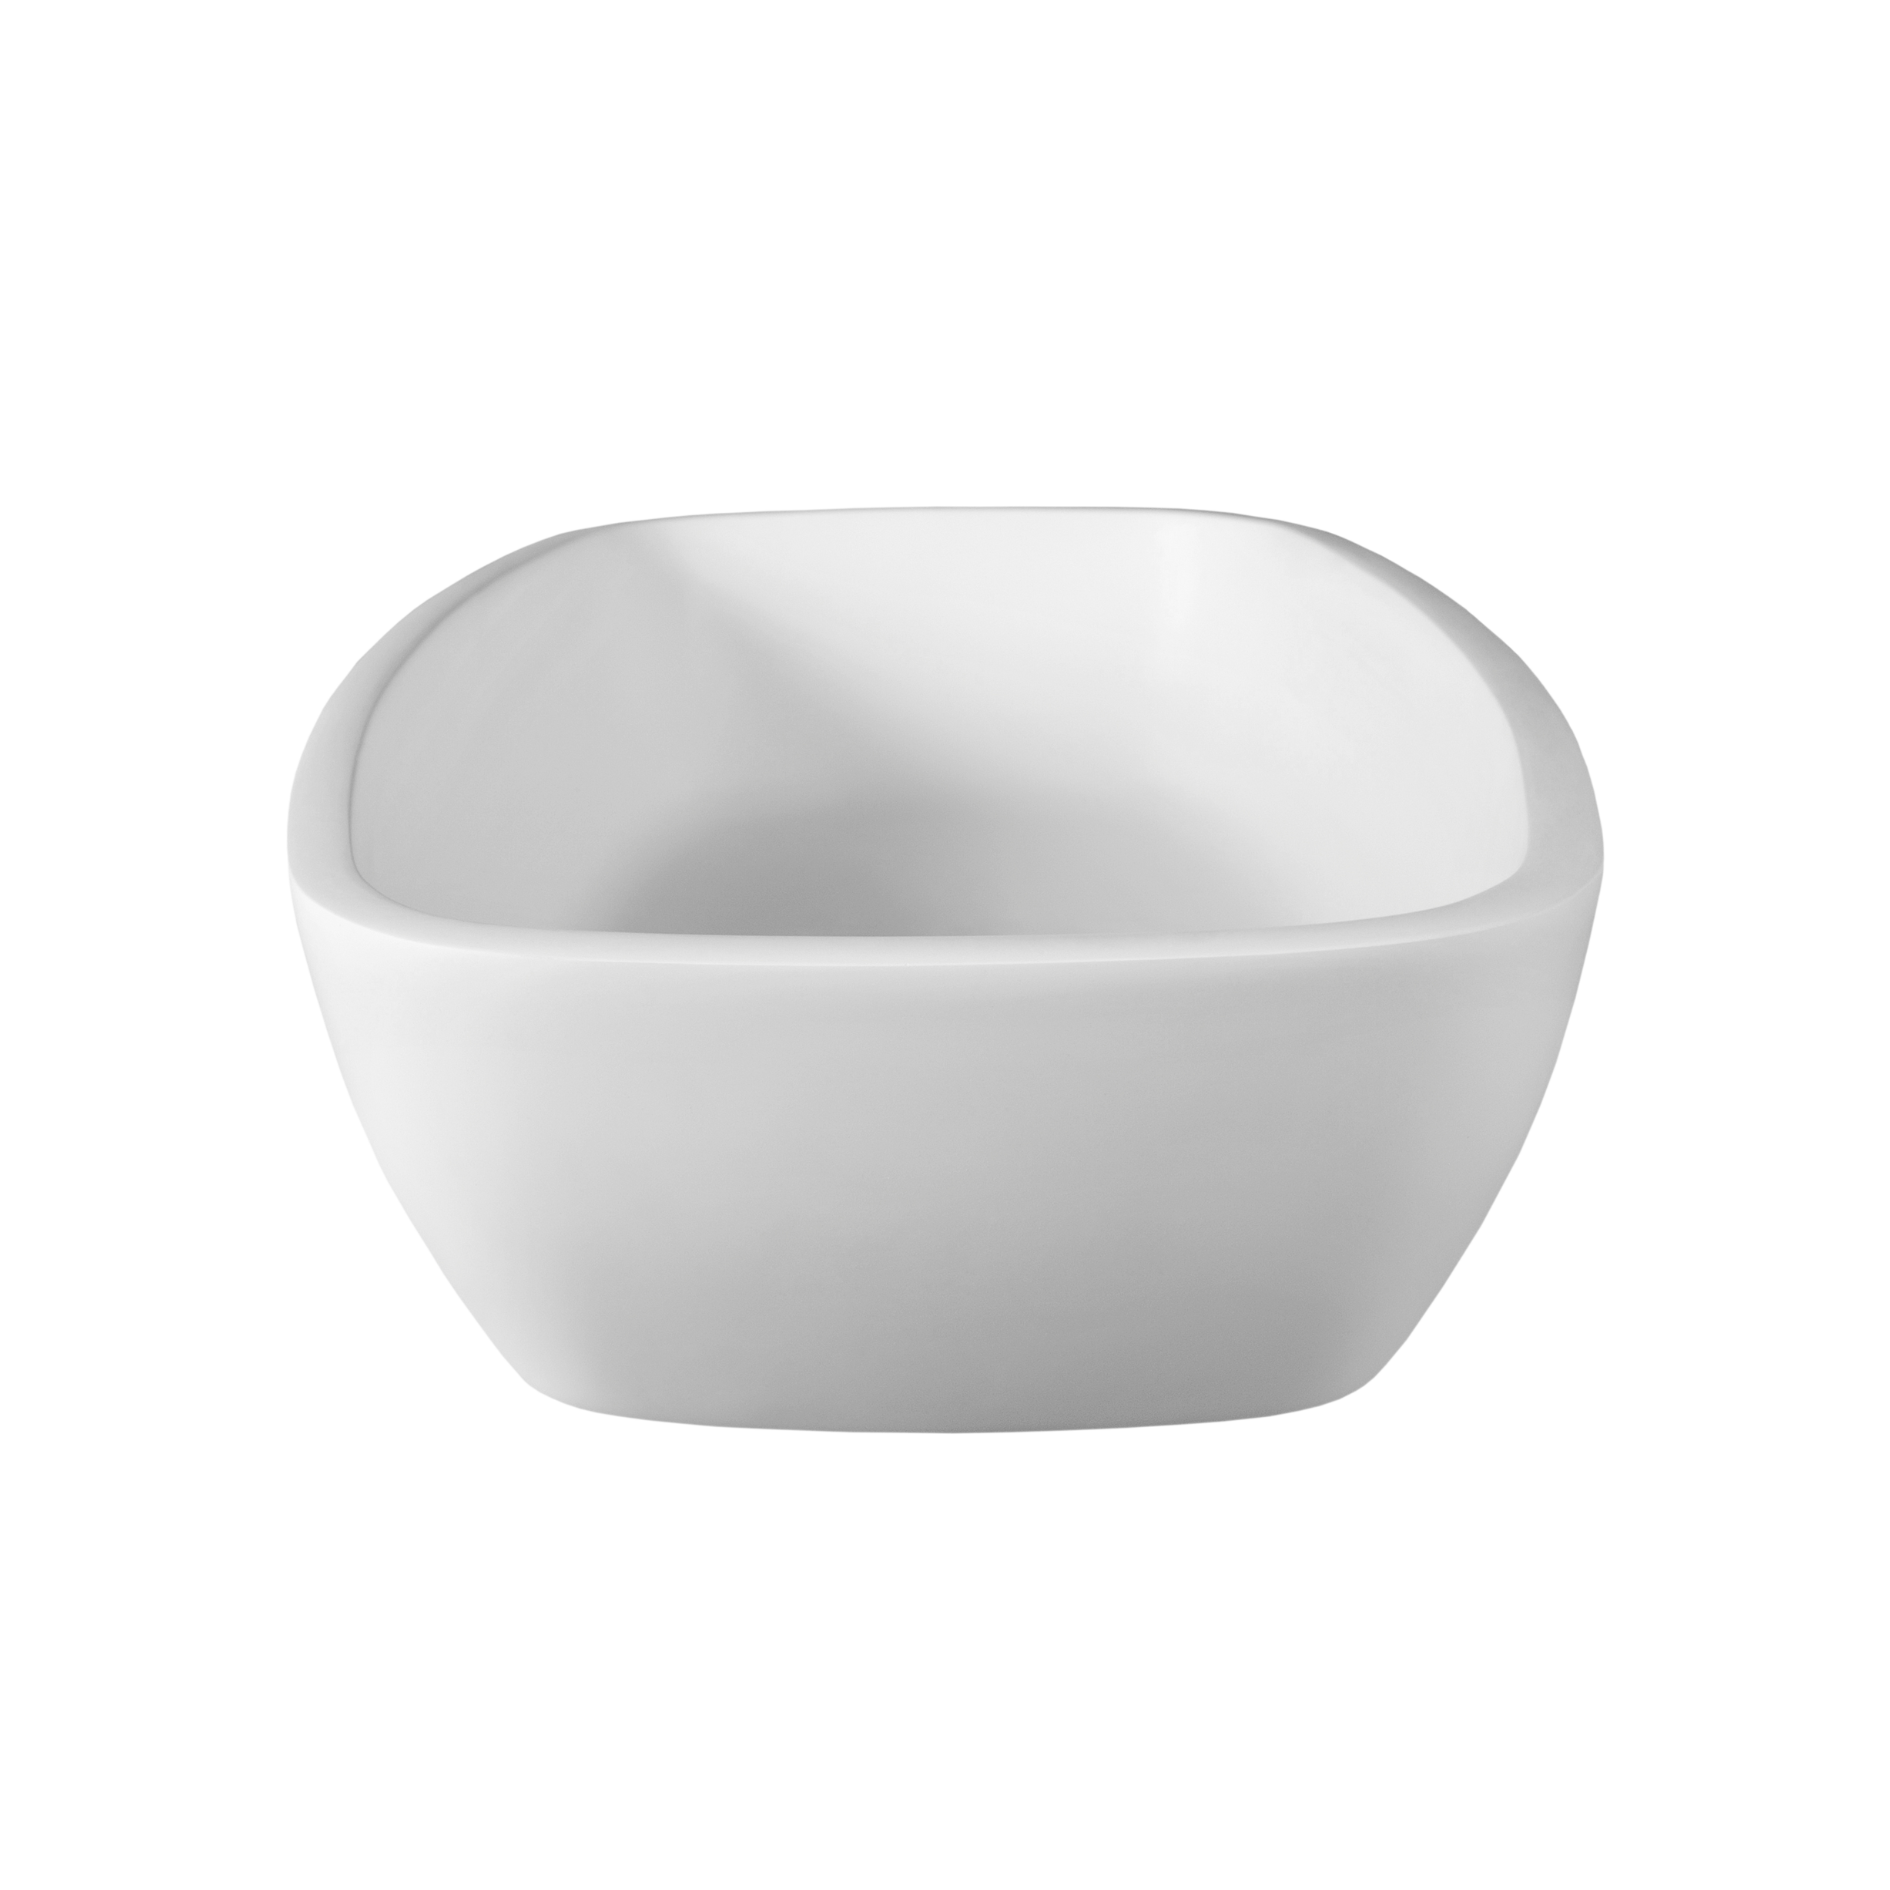 white vessel sink